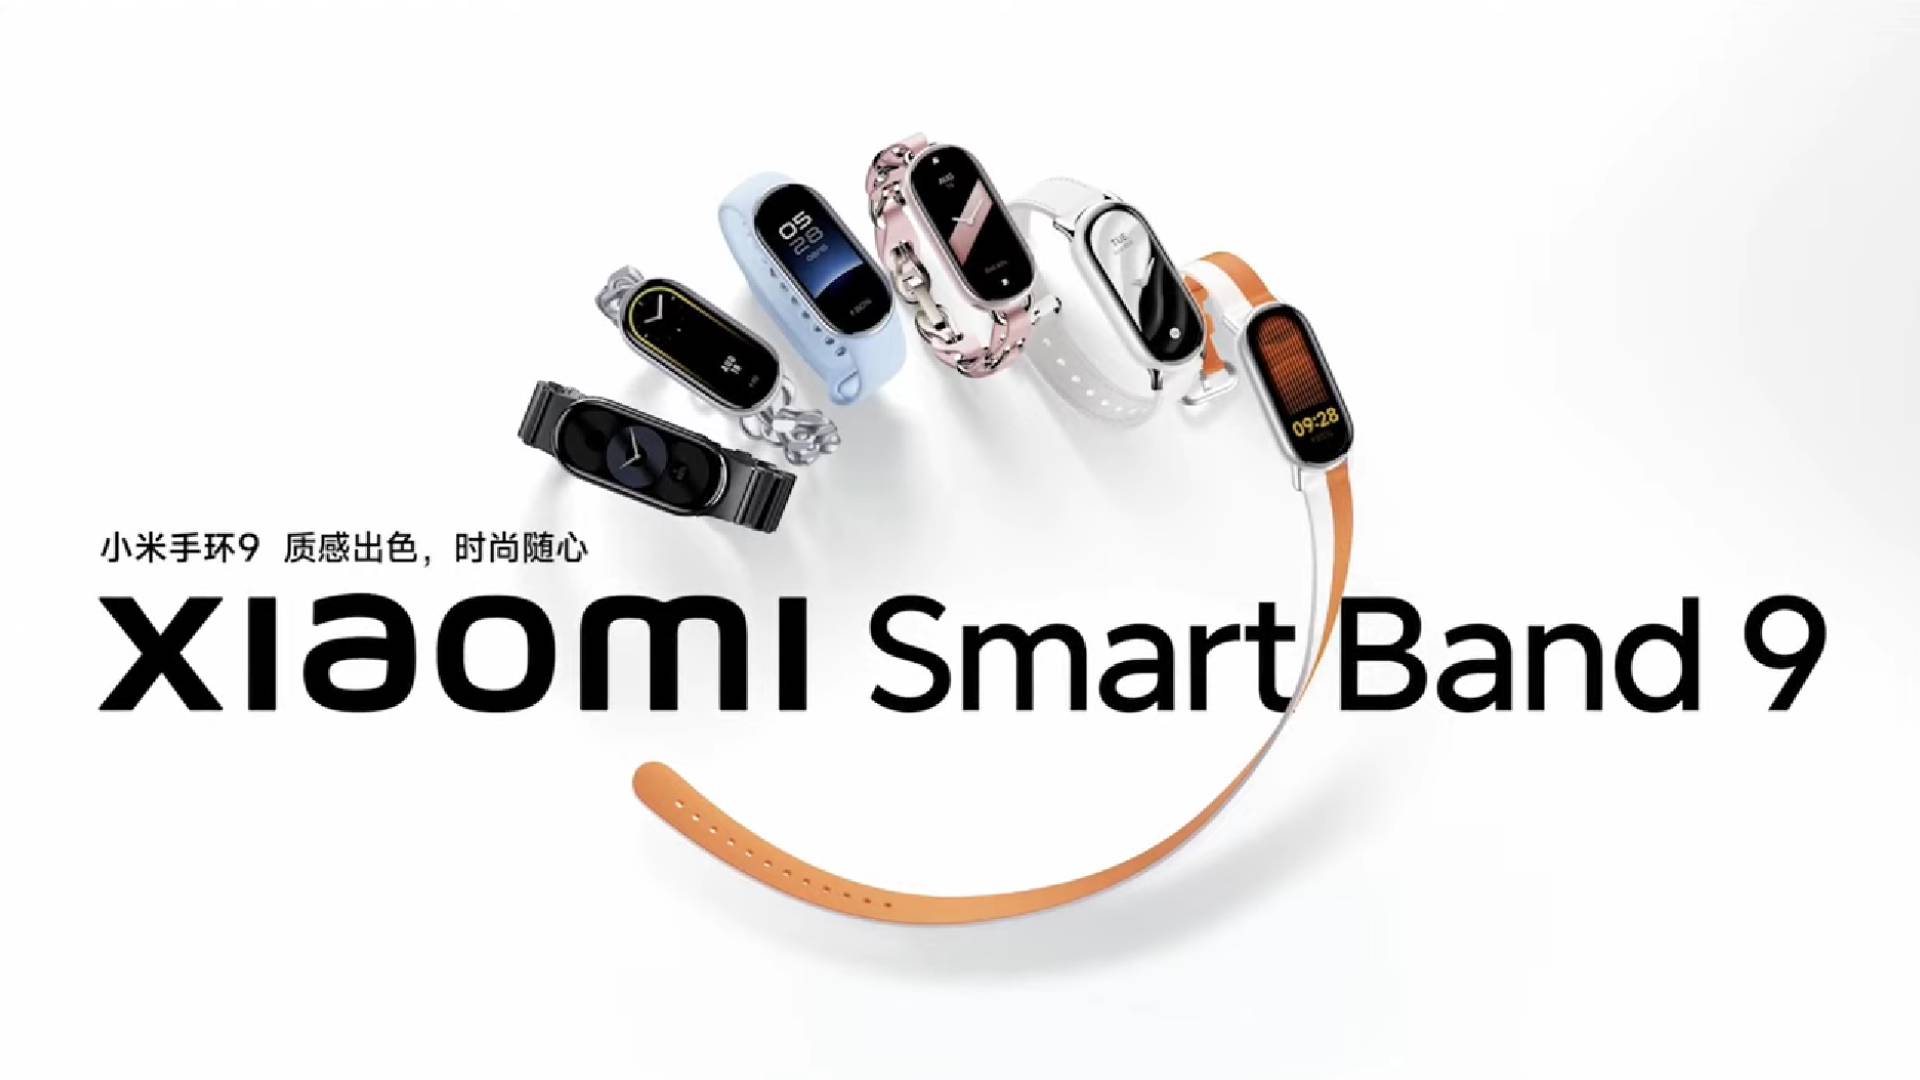 Xiaomi Mi Band 9 launch poster.